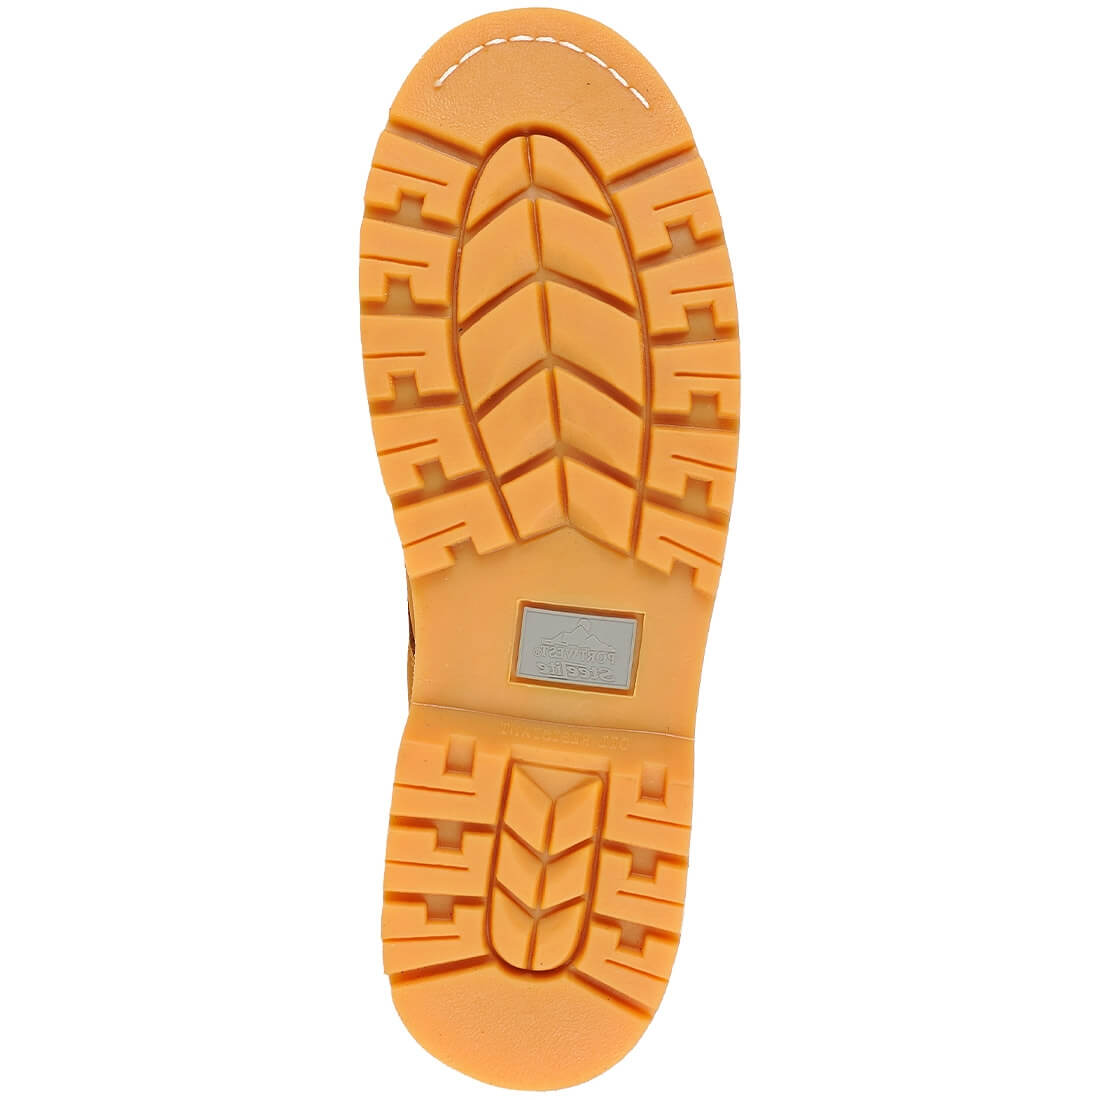 Bocanc de Protectie Steelite™ Welted SB - Incaltaminte de protectie | Bocanci, Pantofi, Sandale, Cizme